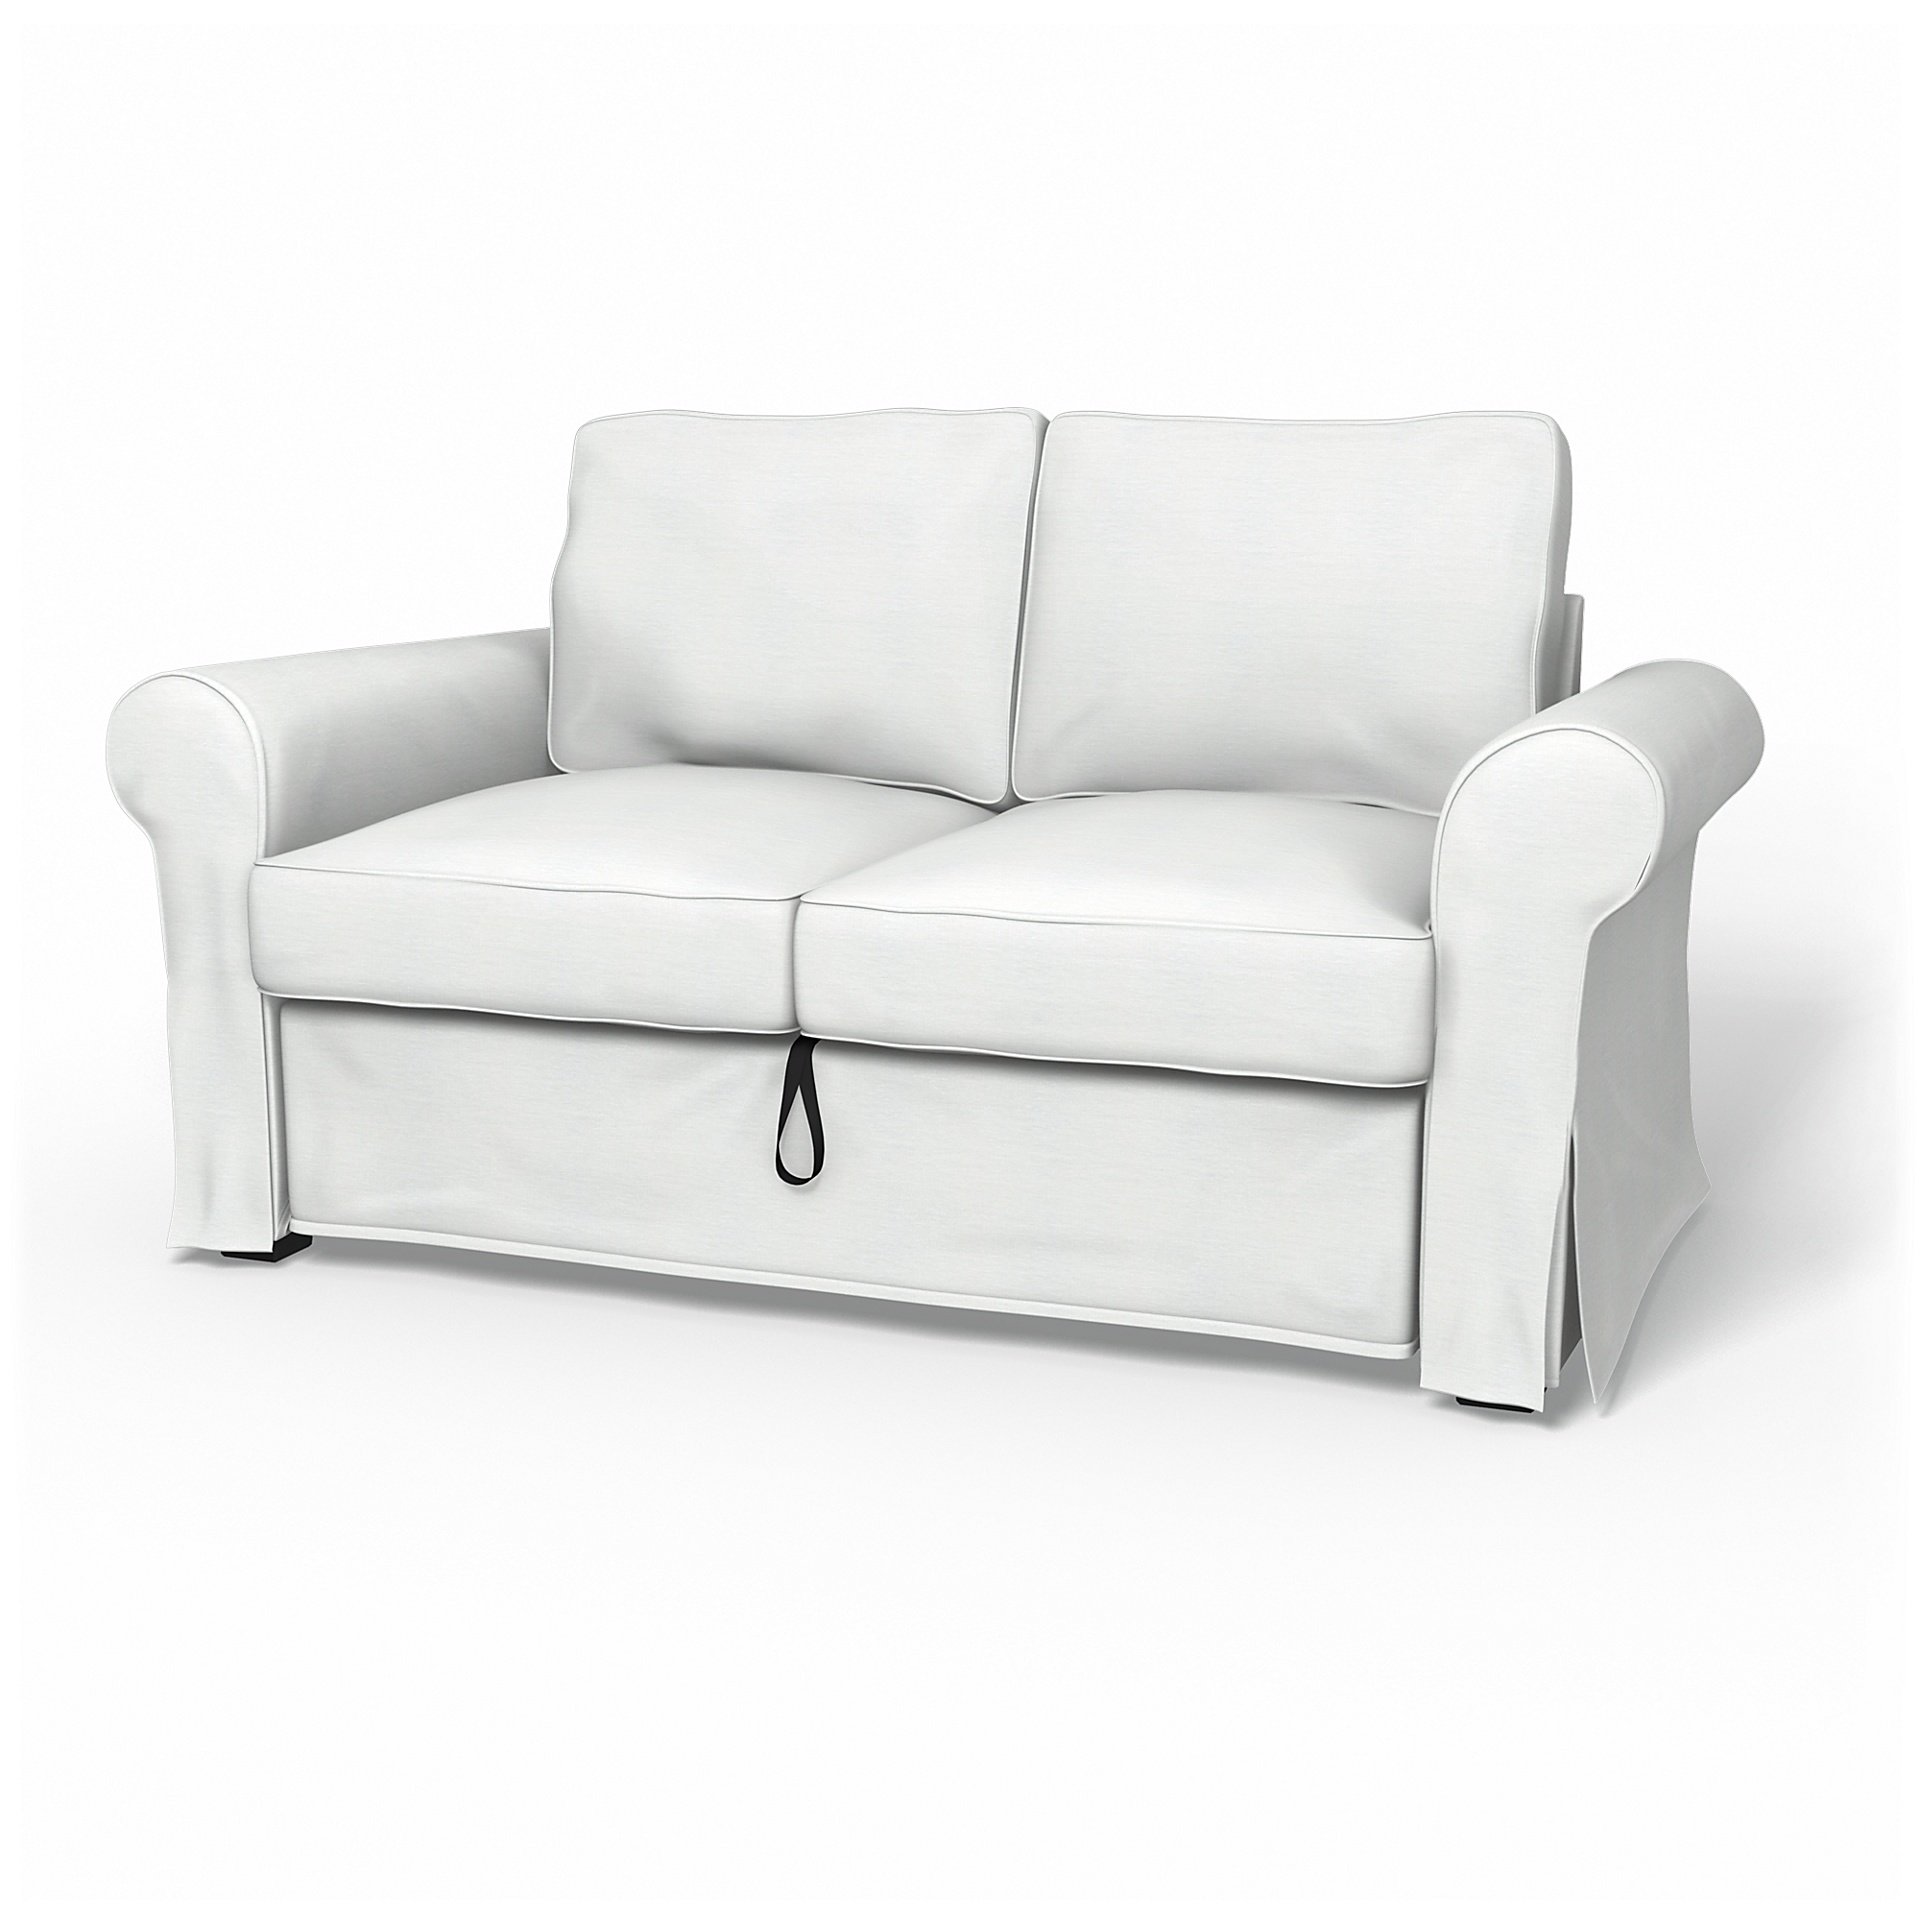 IKEA - Backabro 2 Seater Sofa Bed Cover, White, Linen - Bemz